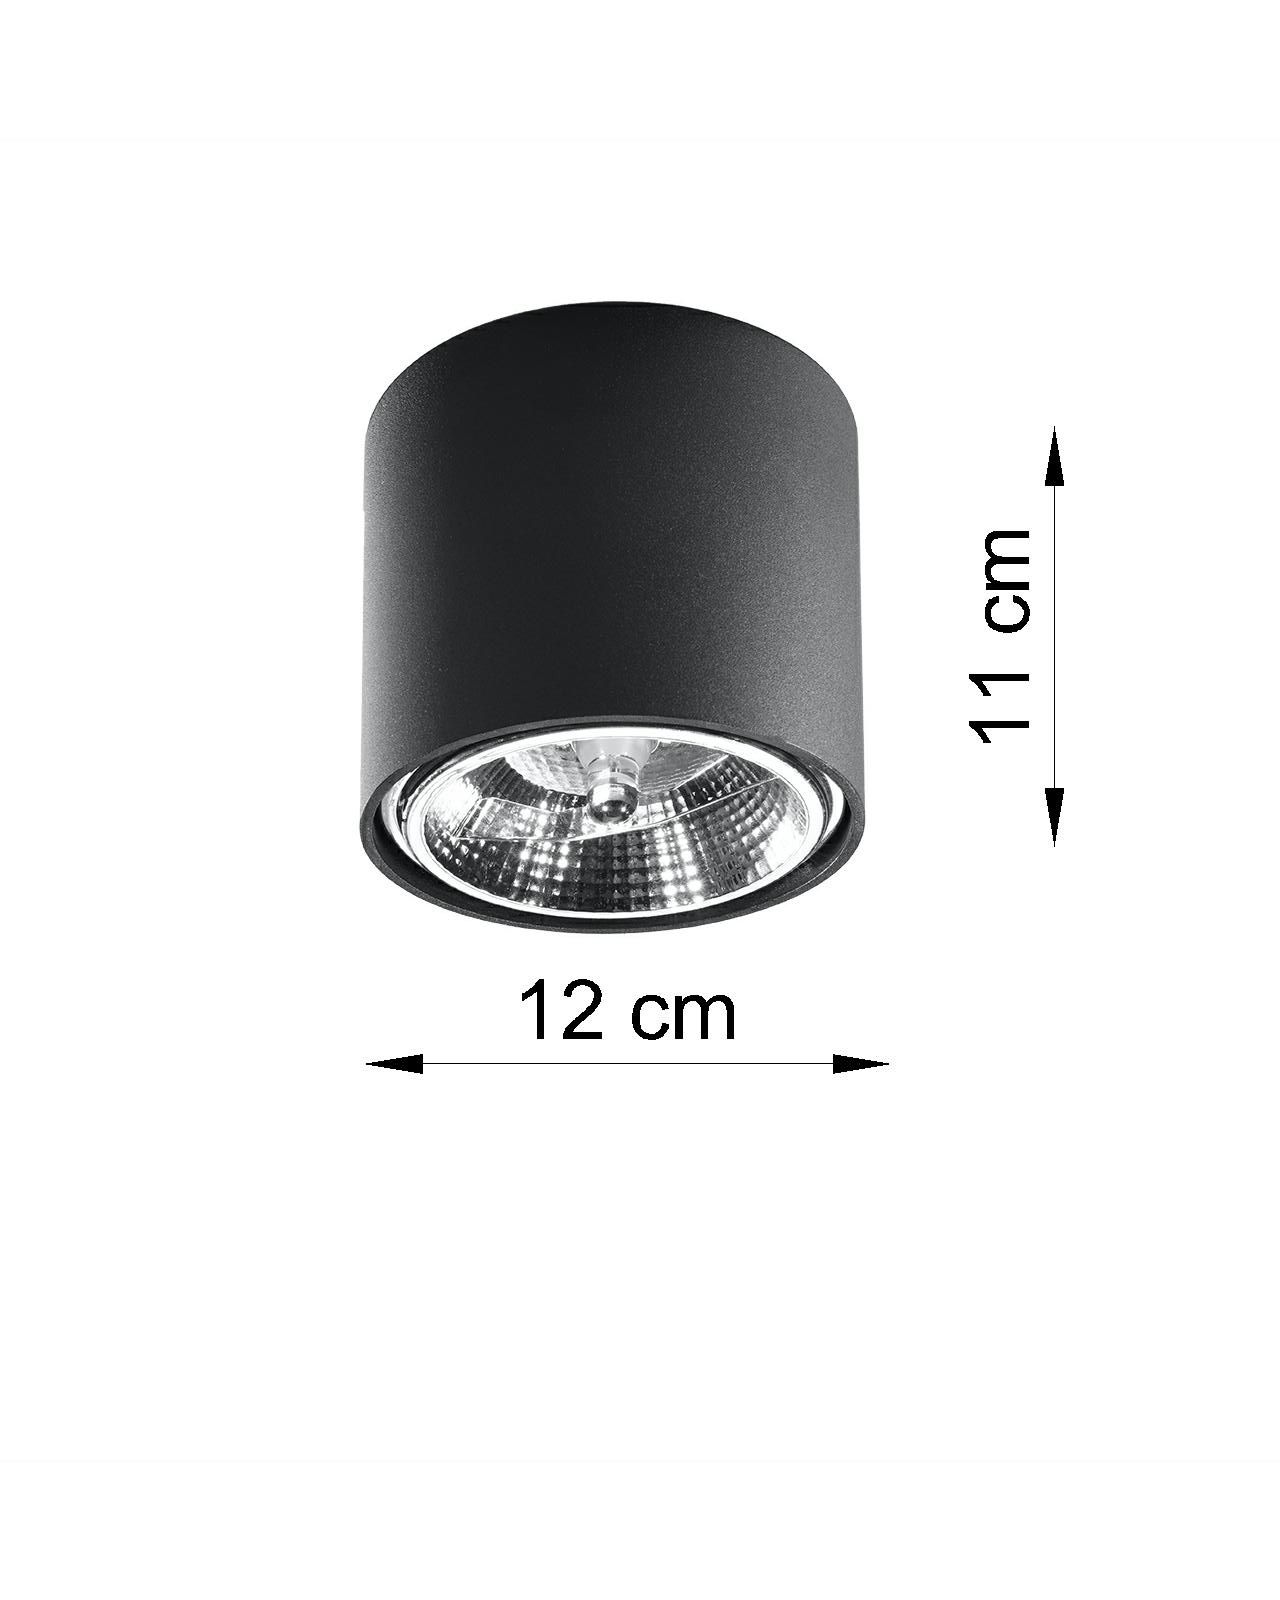 Schwarzer Spot Decke Ø12cm rund GU10 Modern vielseitig